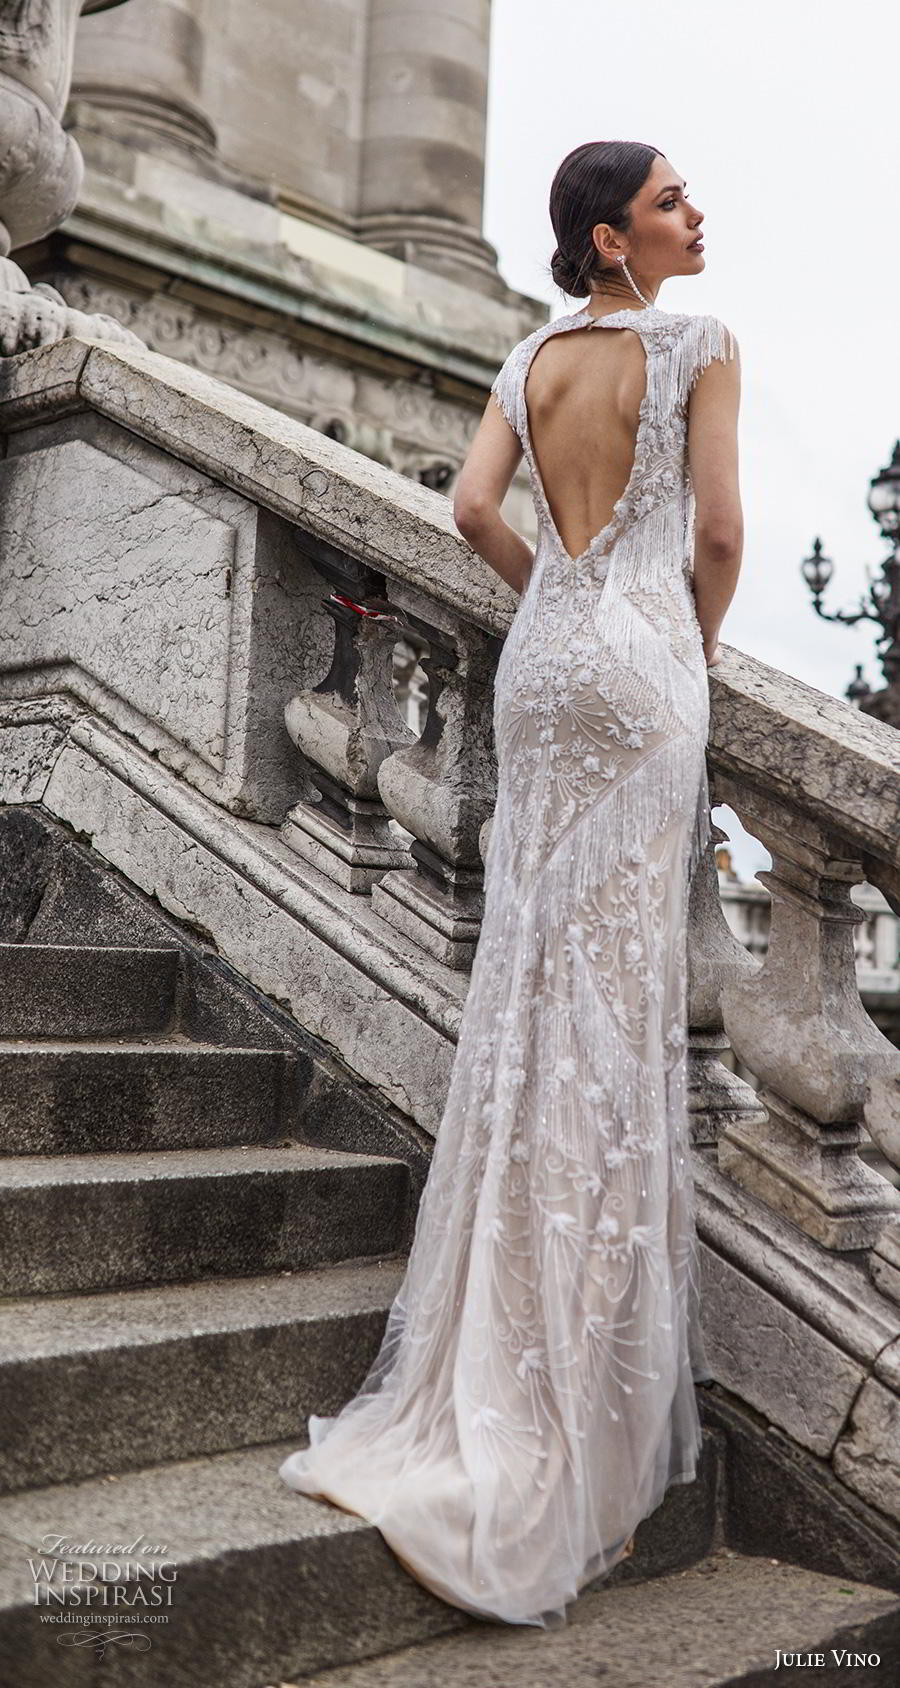 julie vino 2019 paris bridal sleeveless jewel neck keyhole bodice full embellishment elegant glamorous sheath wedding dress keyhole back sweep train (13) bv